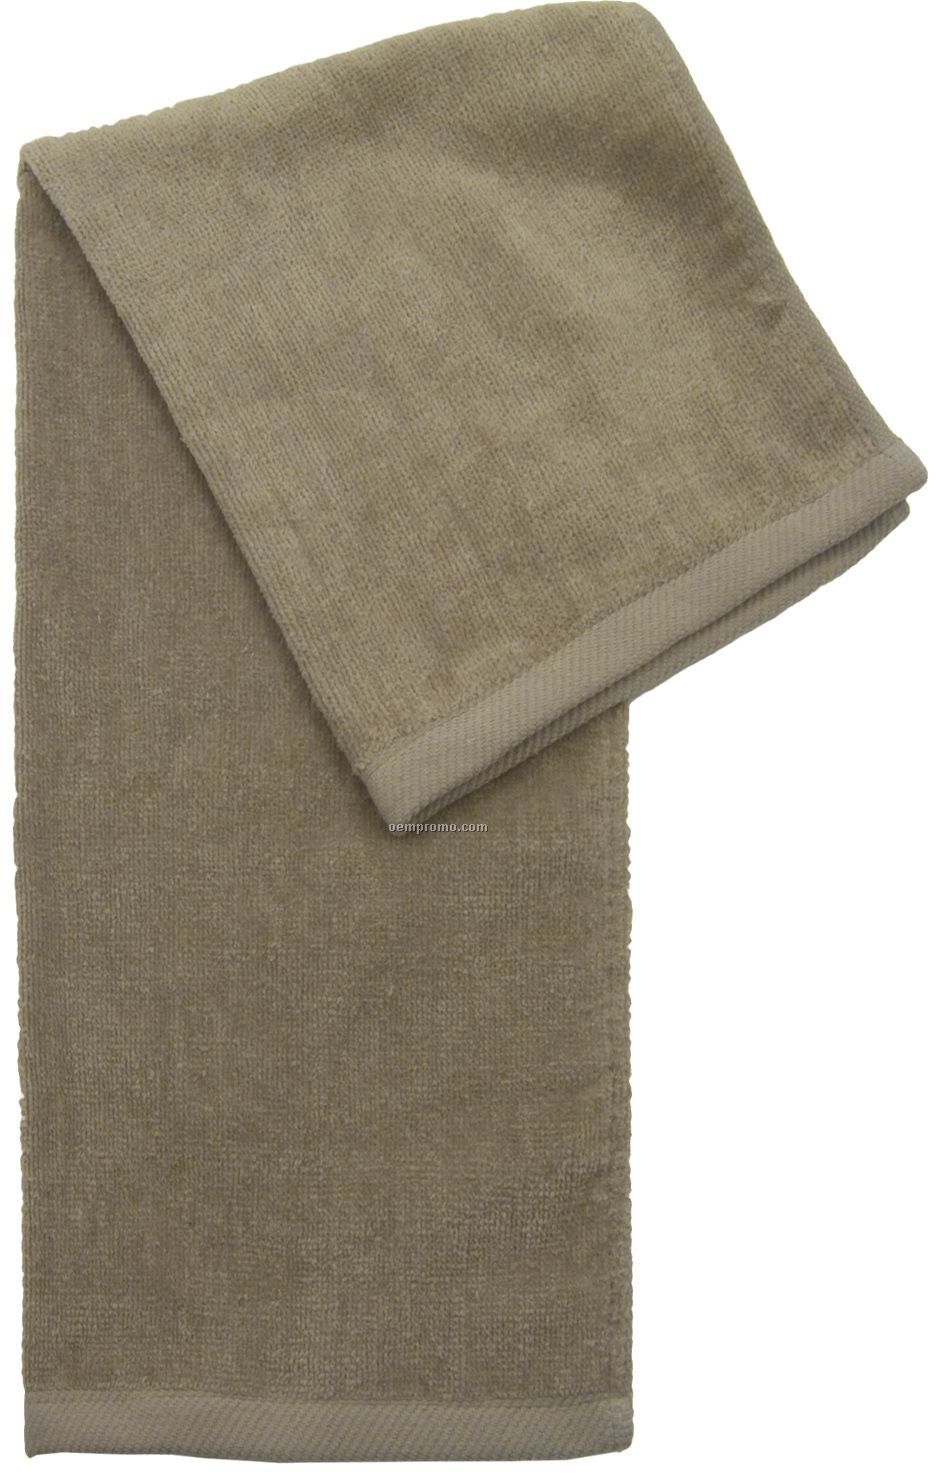 Sport Towel (Blank)